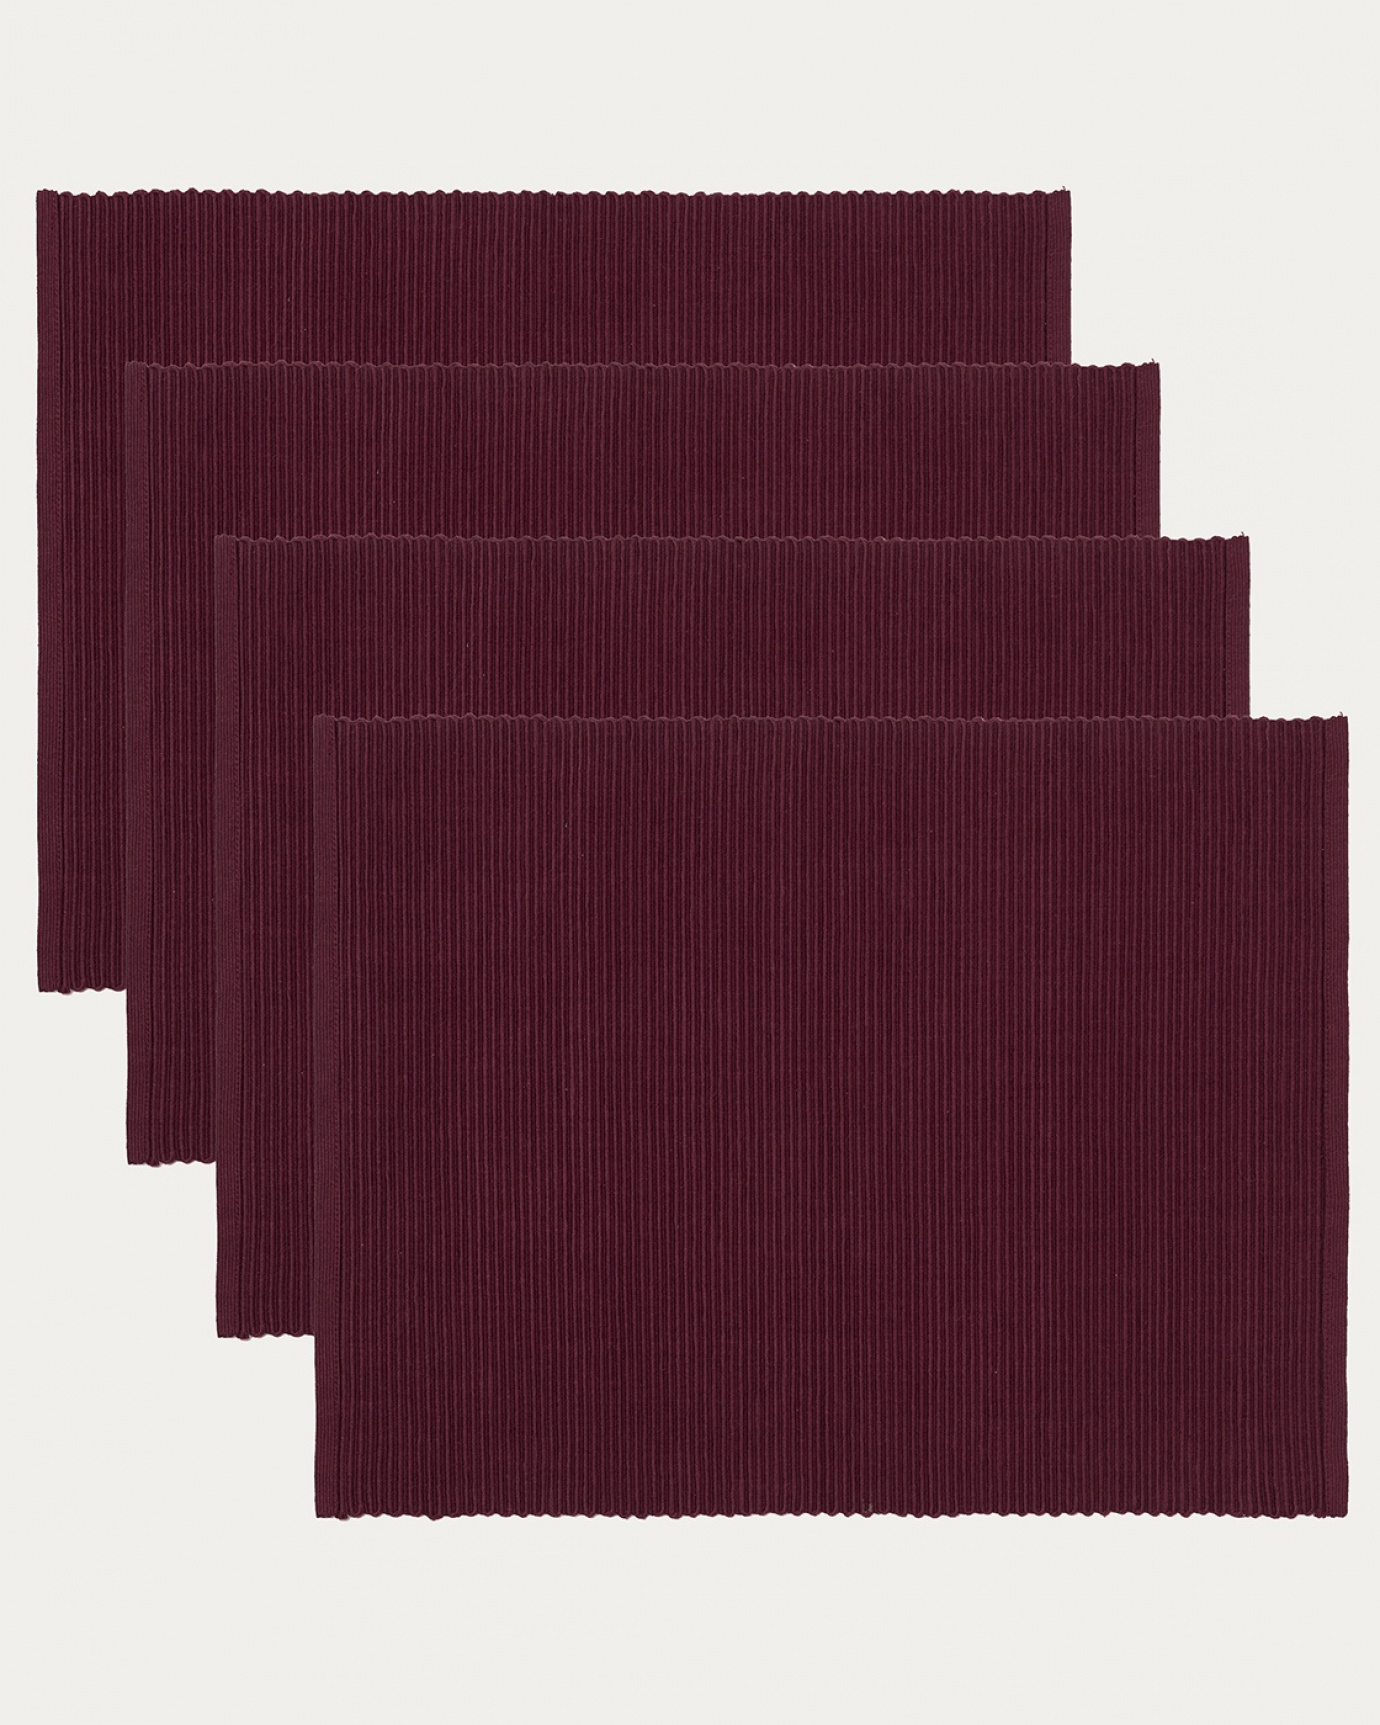 Immagine prodotto rosso borgogna tovaglietta UNI in morbido cotone a costine di qualità di LINUM DESIGN. Dimensioni 35x46 cm e venduto in 4-pezzi.